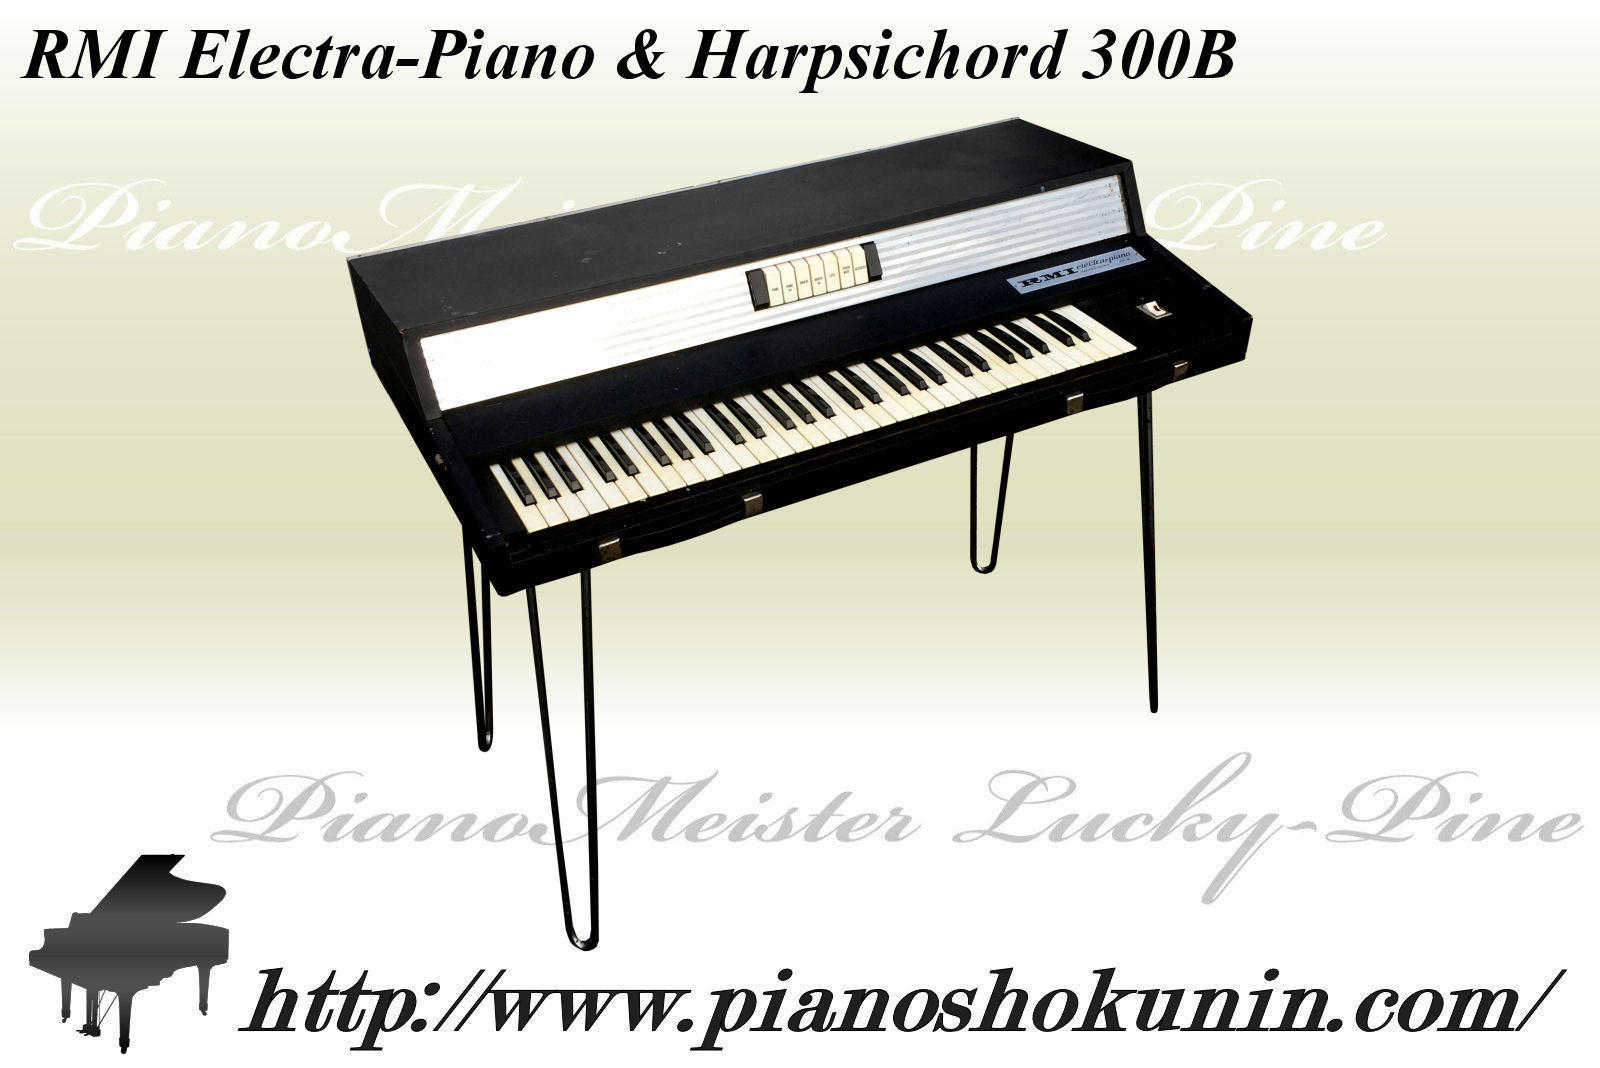 RMI Electra-Piano & Harpsichord 300B